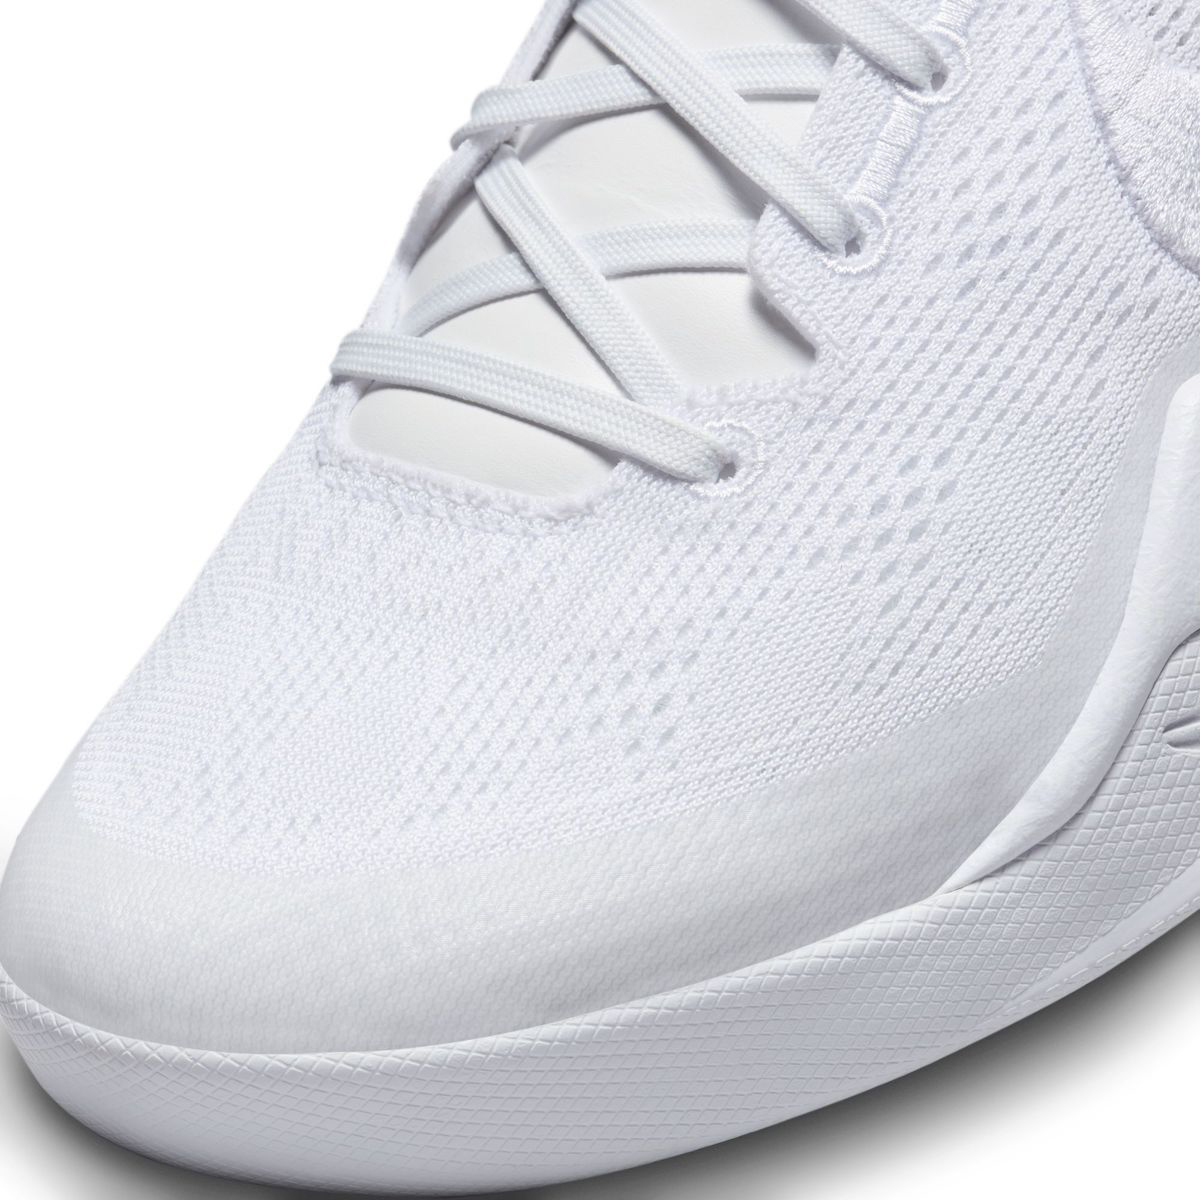 Nike-Kobe-8-Protro-Halo-Release-Date-7